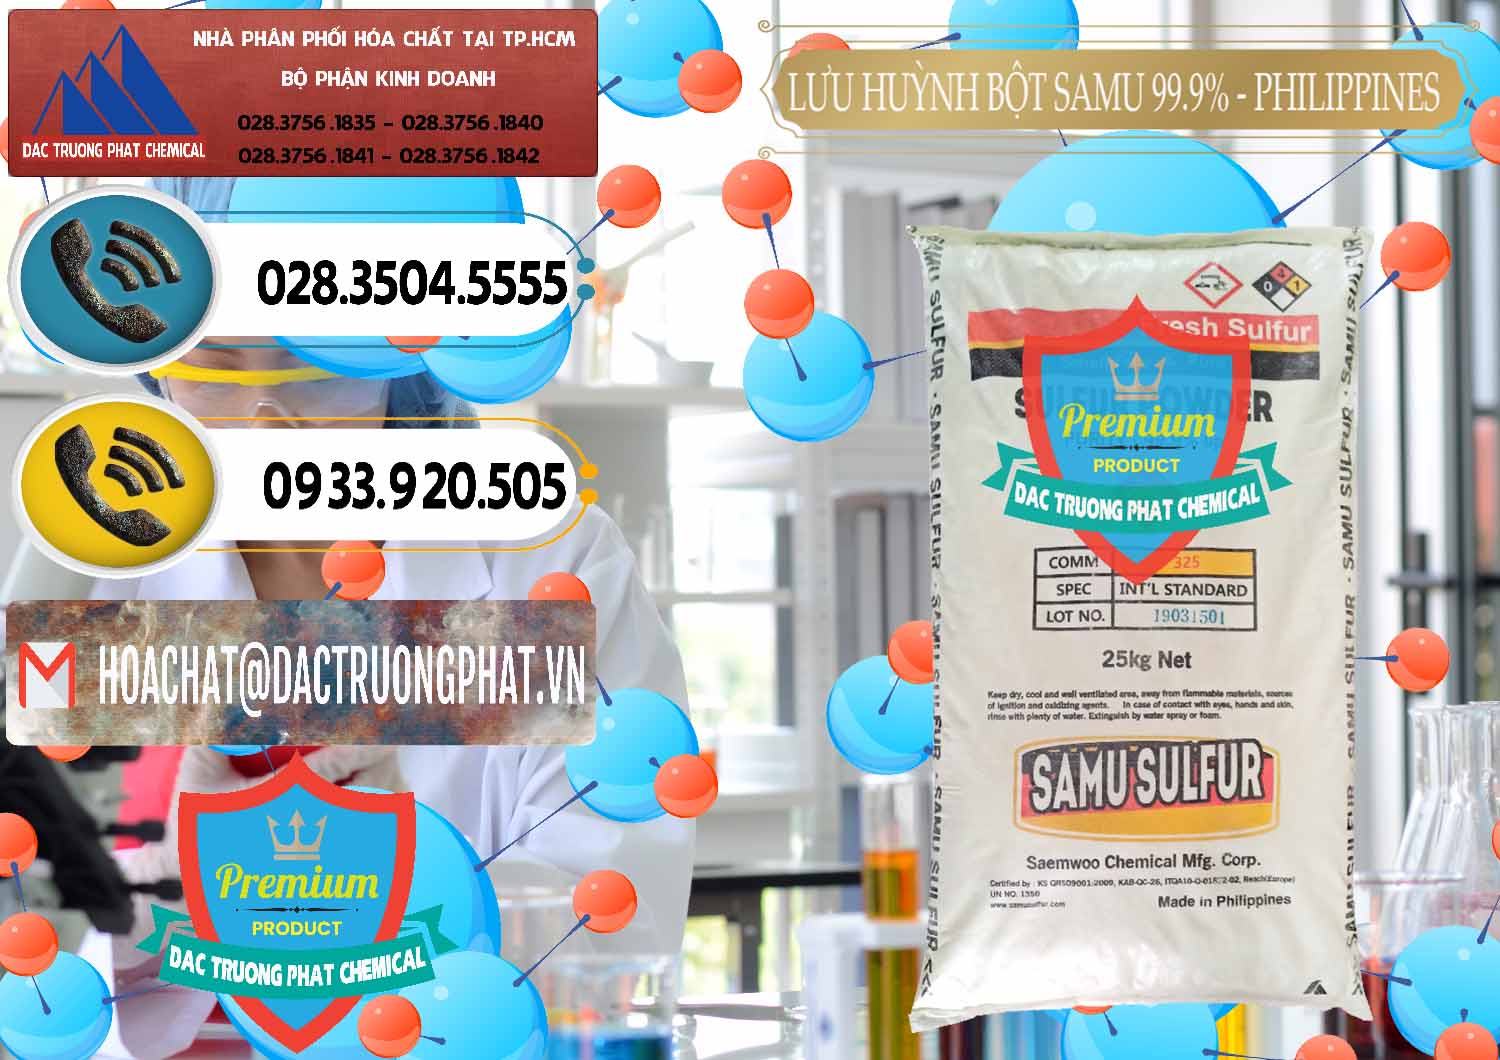 Cty bán - cung cấp Lưu huỳnh Bột - Sulfur Powder Samu Philippines - 0201 - Công ty phân phối & cung cấp hóa chất tại TP.HCM - hoachatdetnhuom.vn